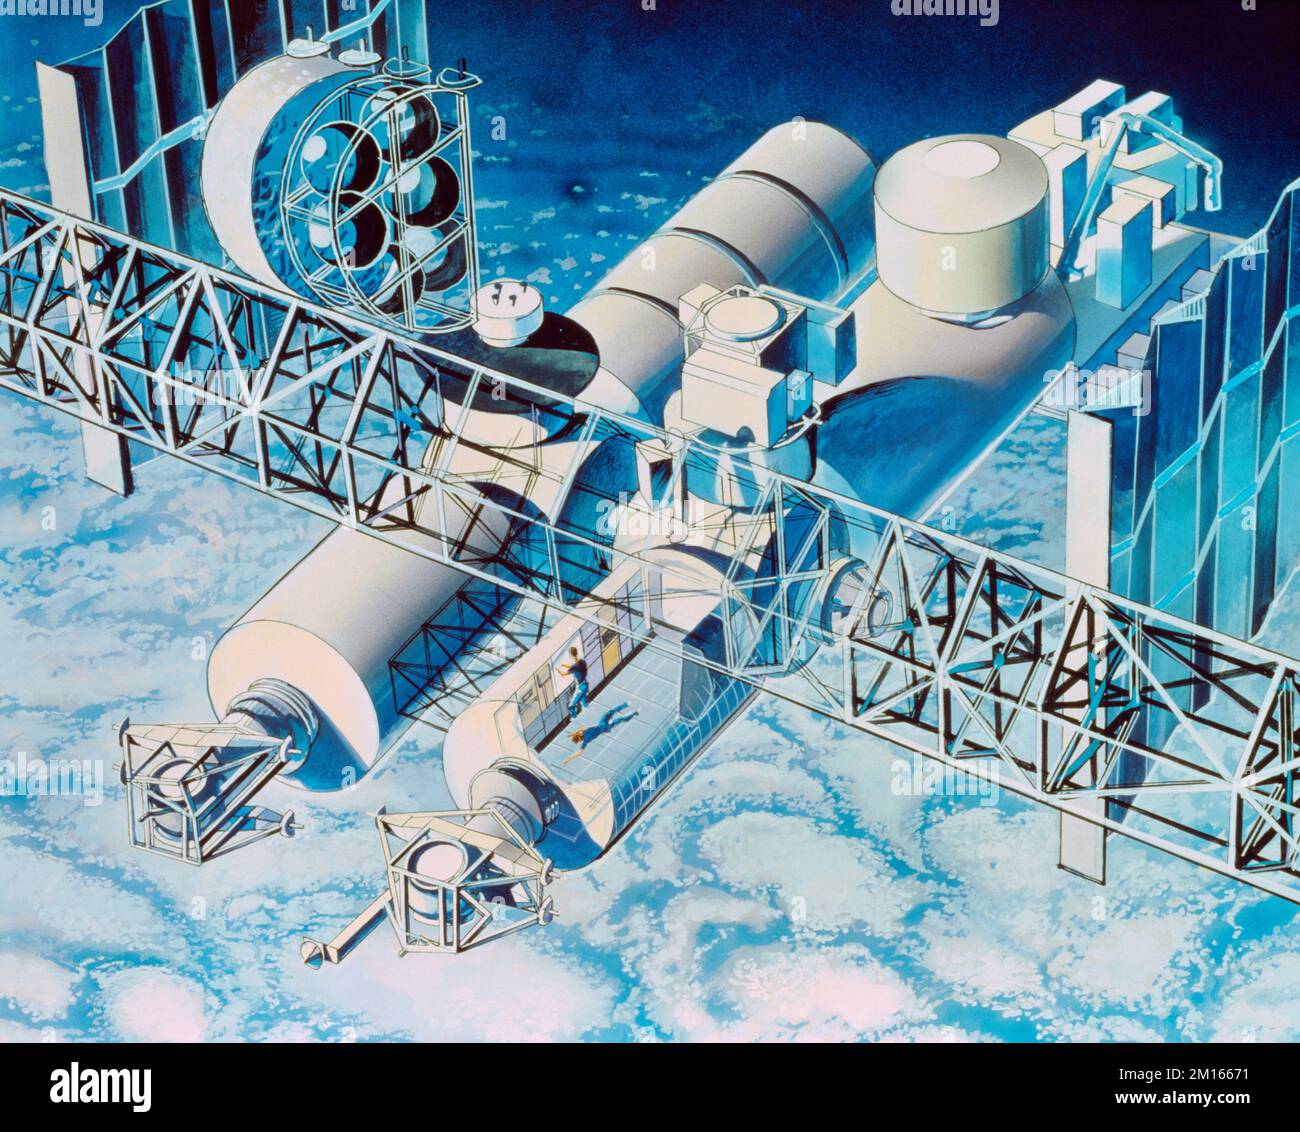 L'impressione dell'artista di Space Station Foto Stock